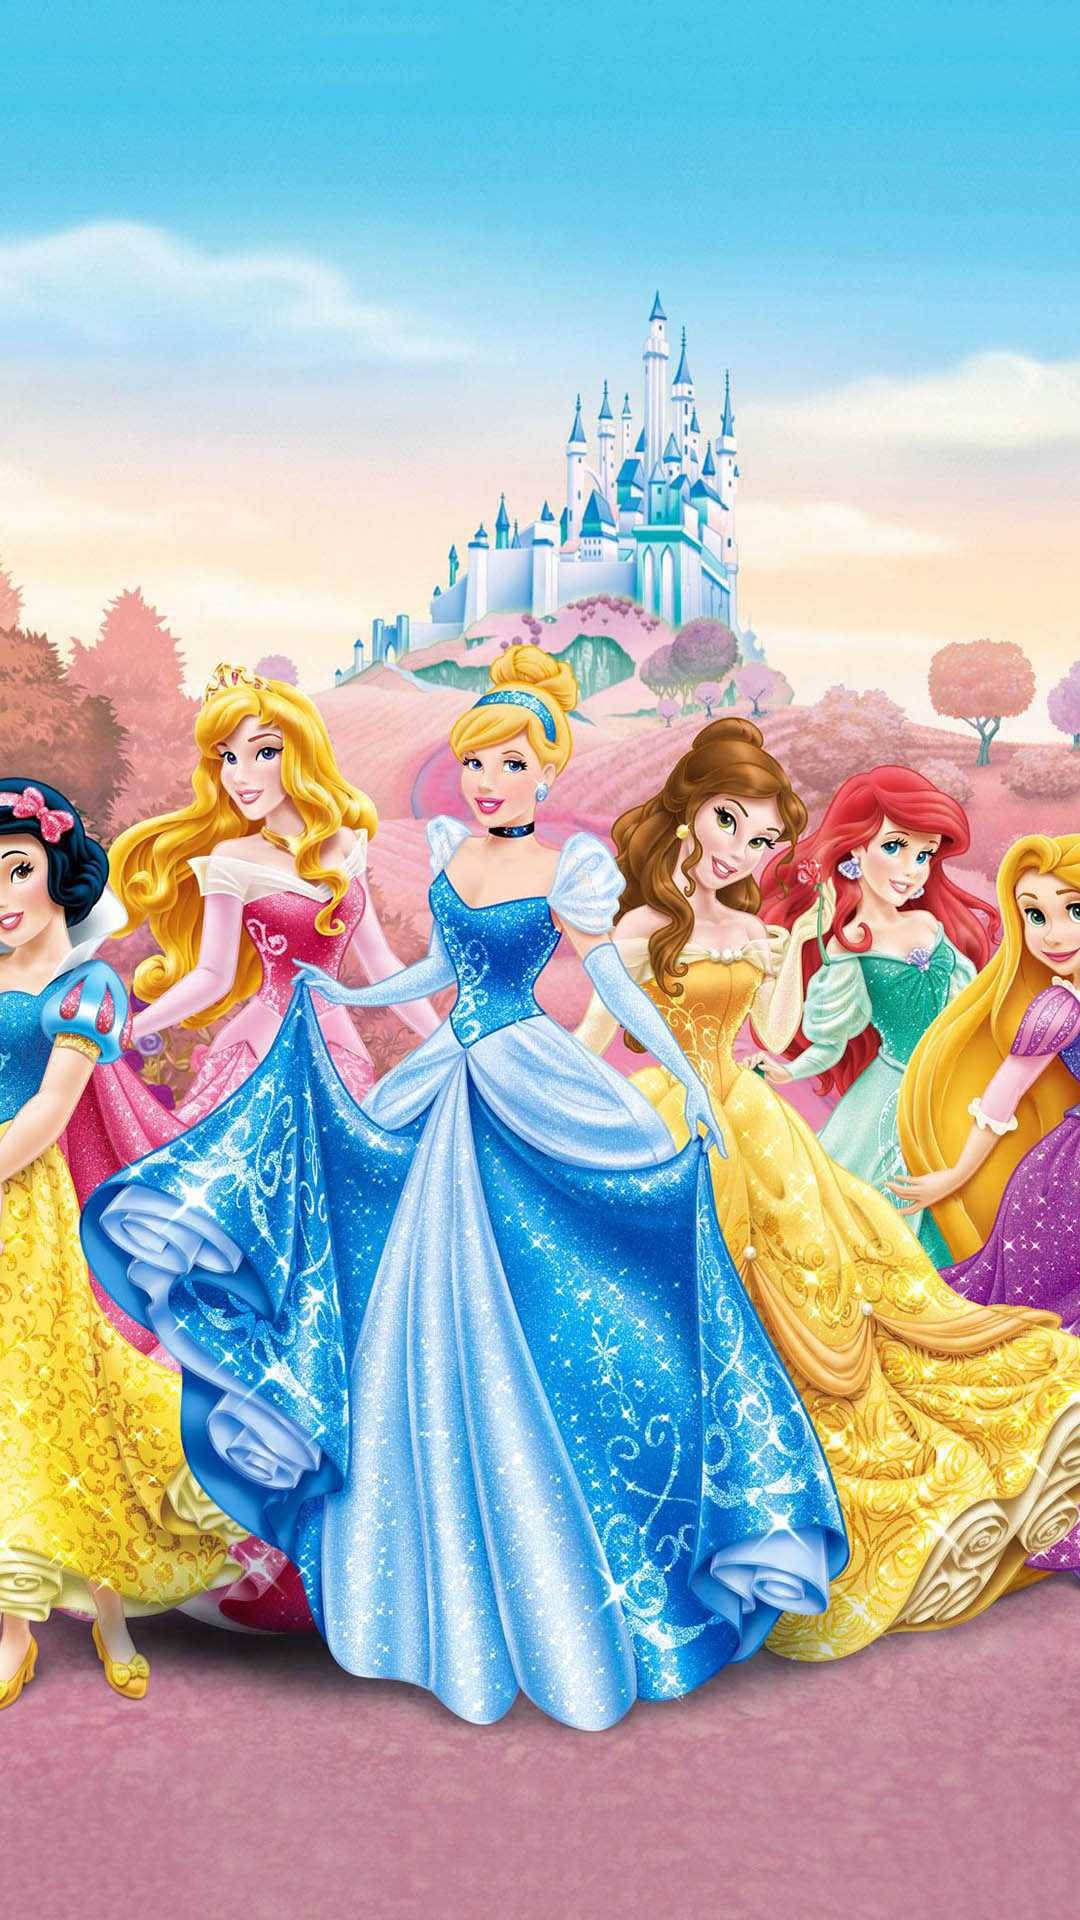 Download Cute Aesthetic Disney Princess Wallpaper